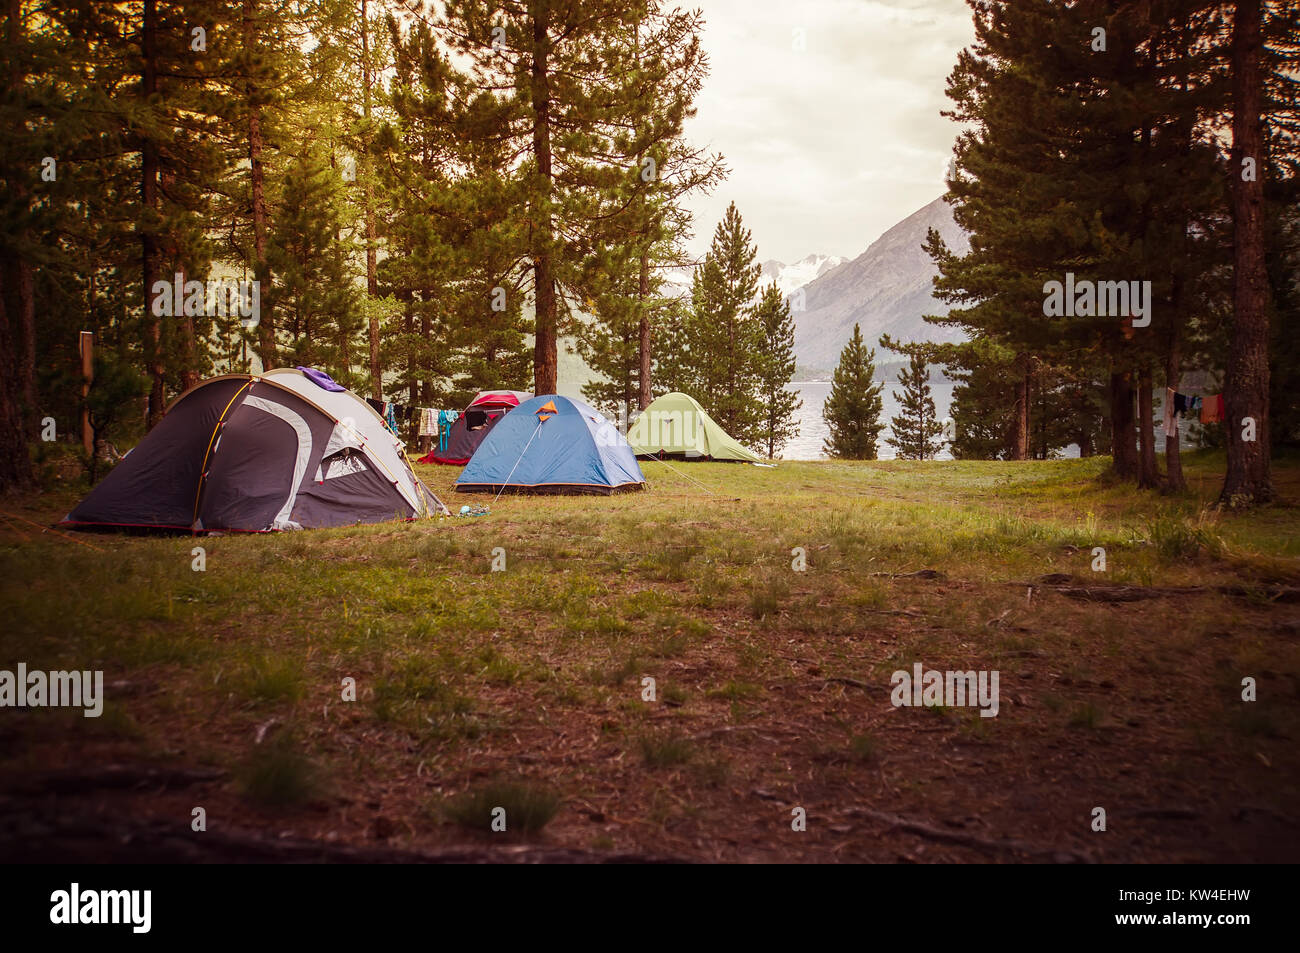 Camping pinewood 2 на русском. Палатка под сосной. Кемпинг под соснами. Кемпинг Pine River. Кемпинг Вуд 2 все сцены.